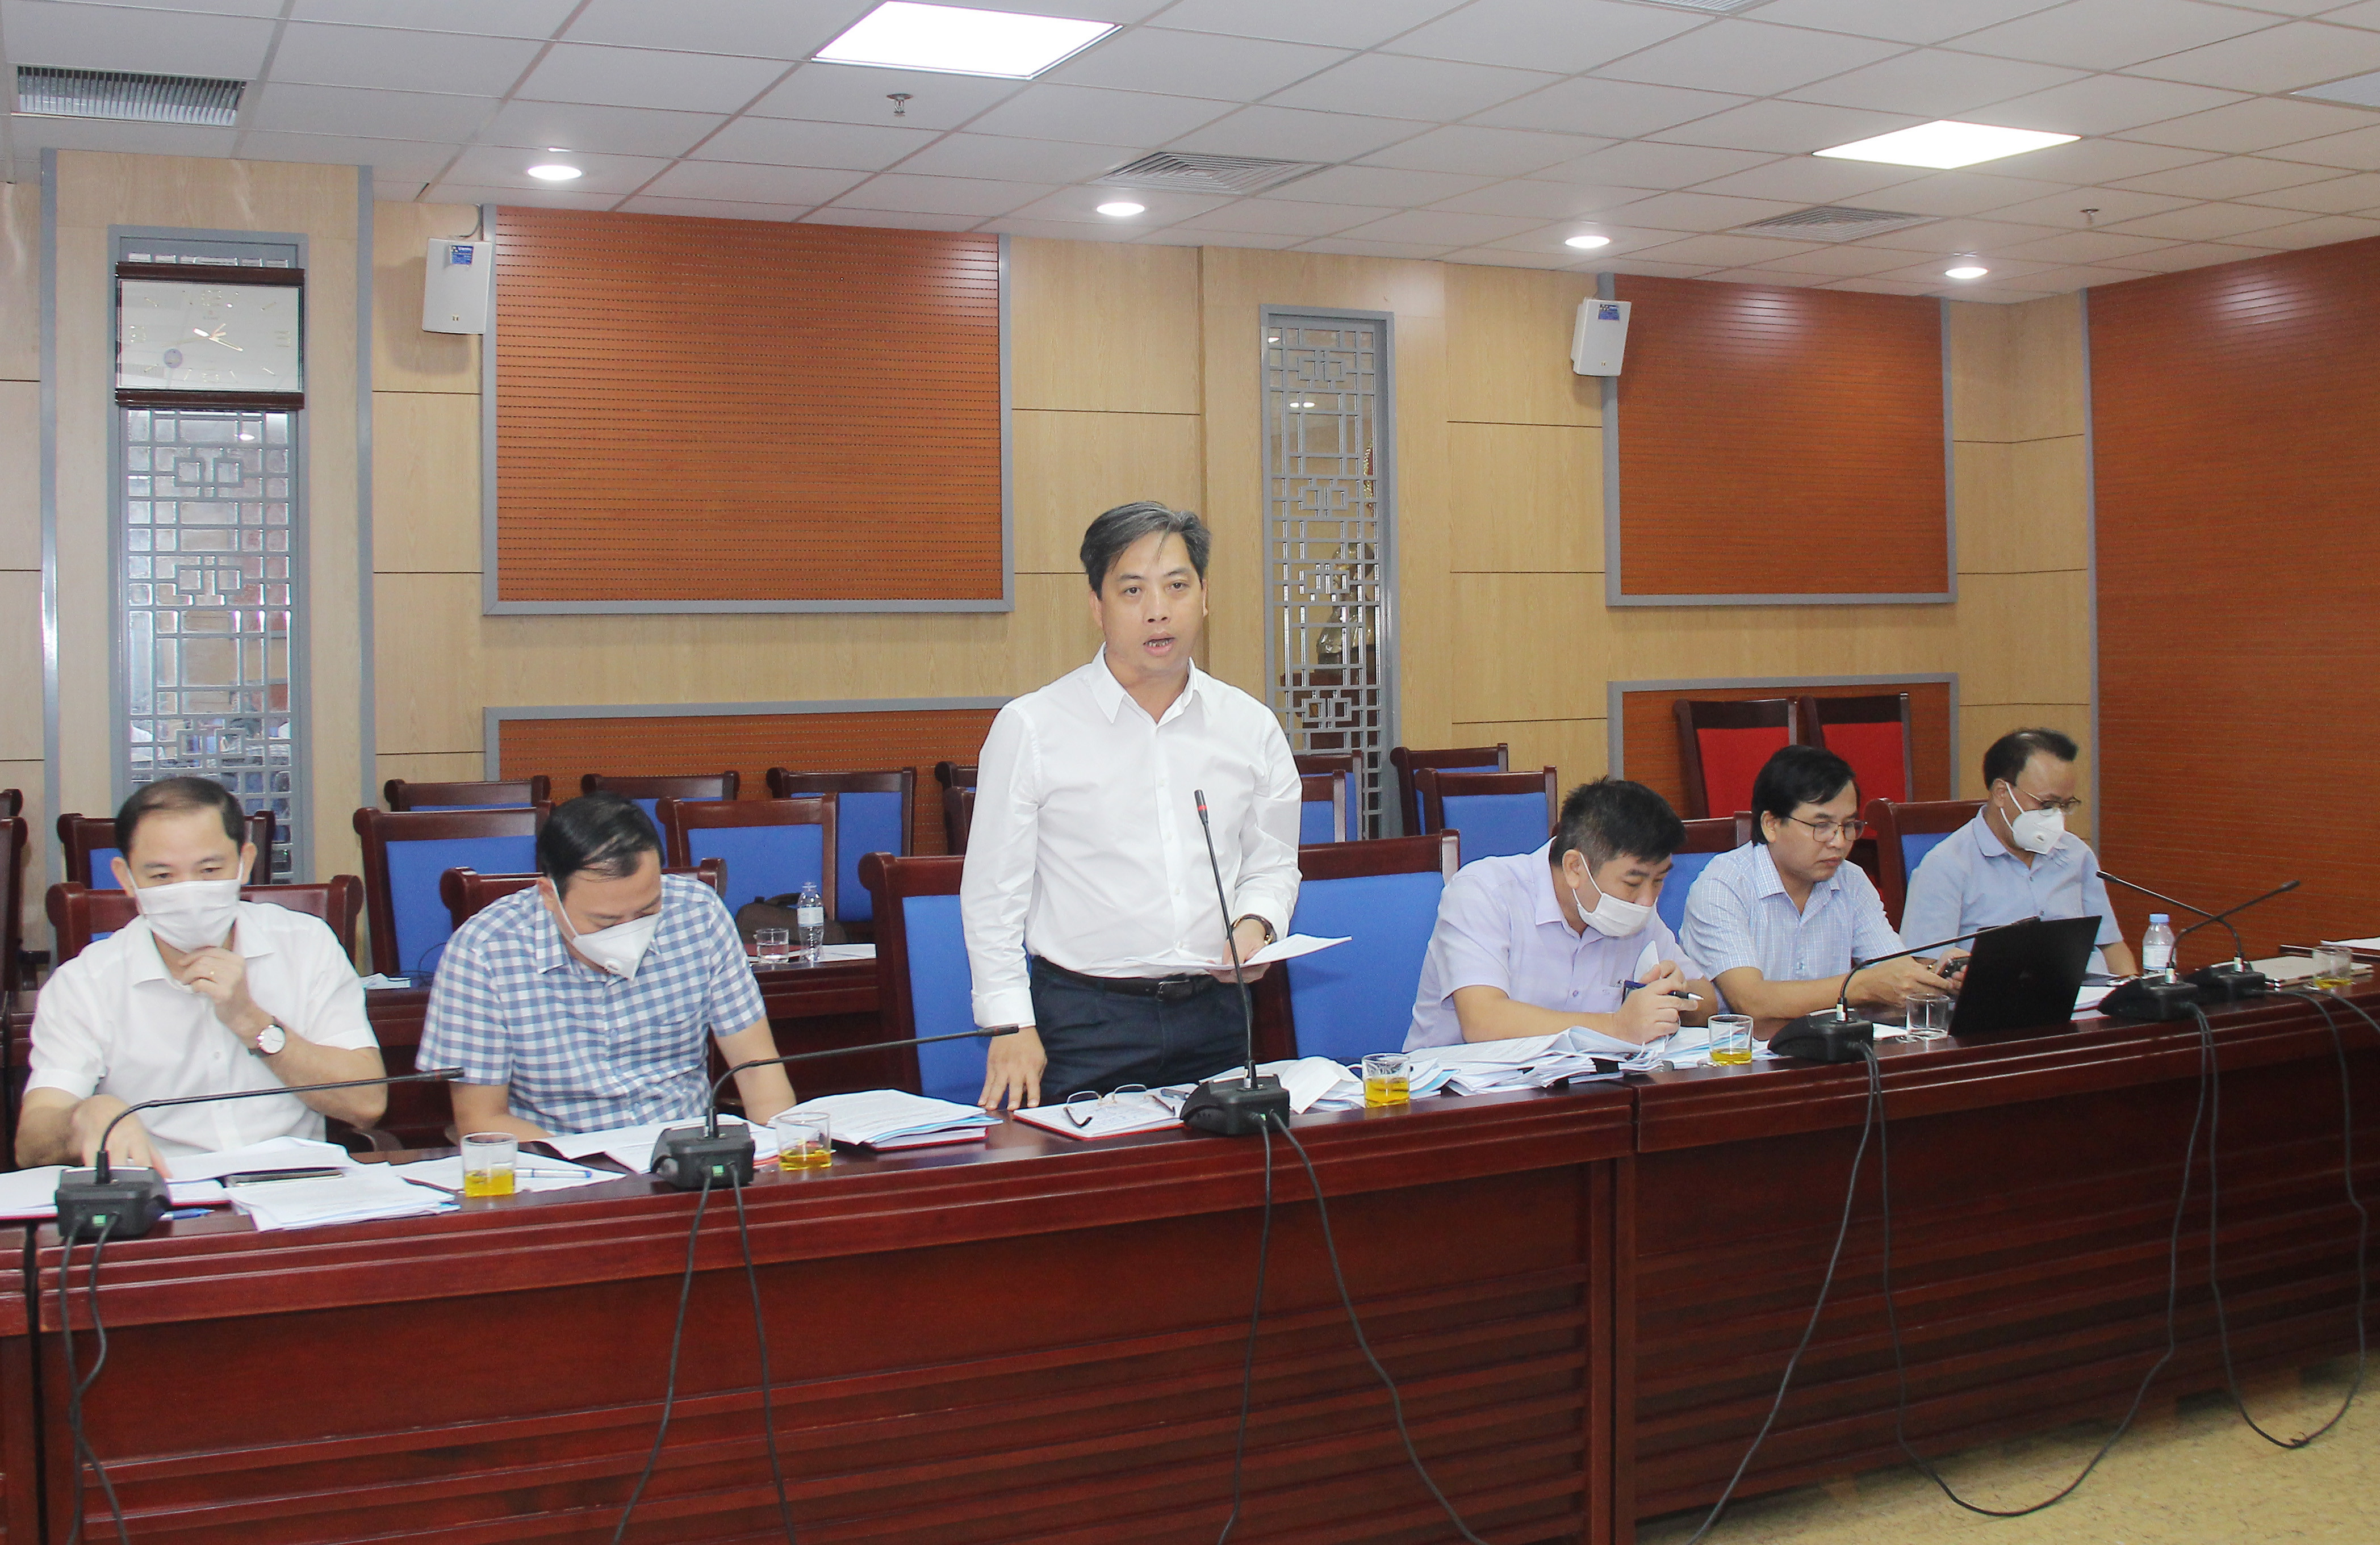 Phó Giám đốc Sở Tài chính Nguyễn Thanh Tùng giải trình một số nội dung mà các thành viên quan tâm. Ảnh: Mai Hoa